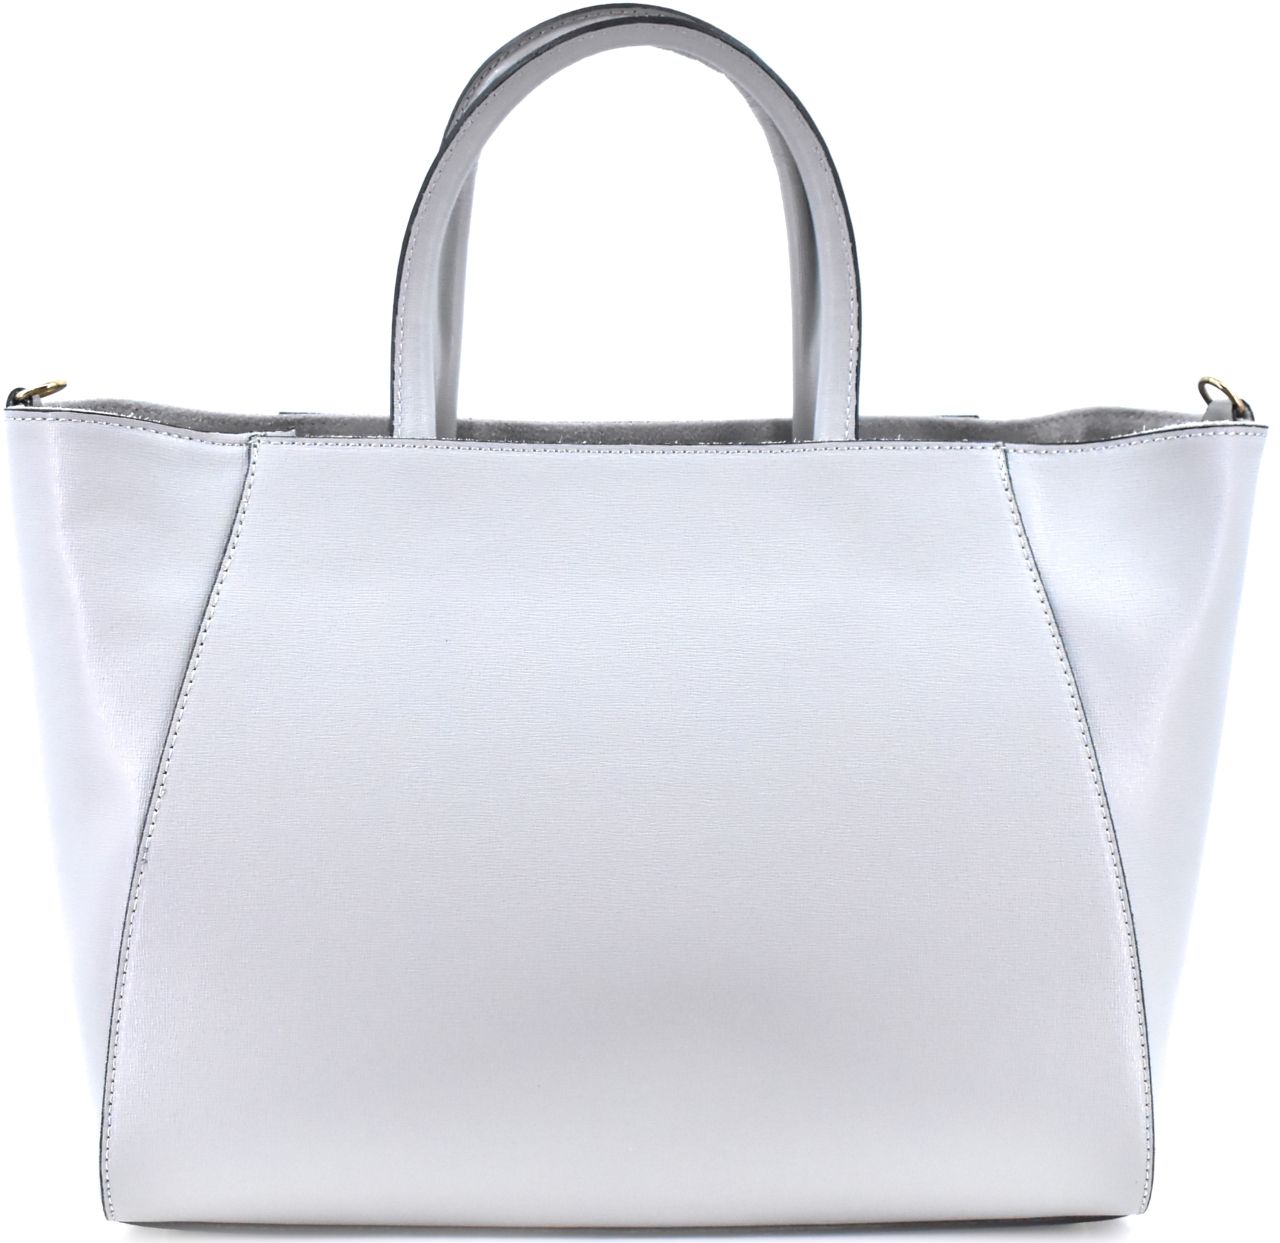 Moderní Shopper dámská kožená kabelka Arteddy - světle šedá 32454